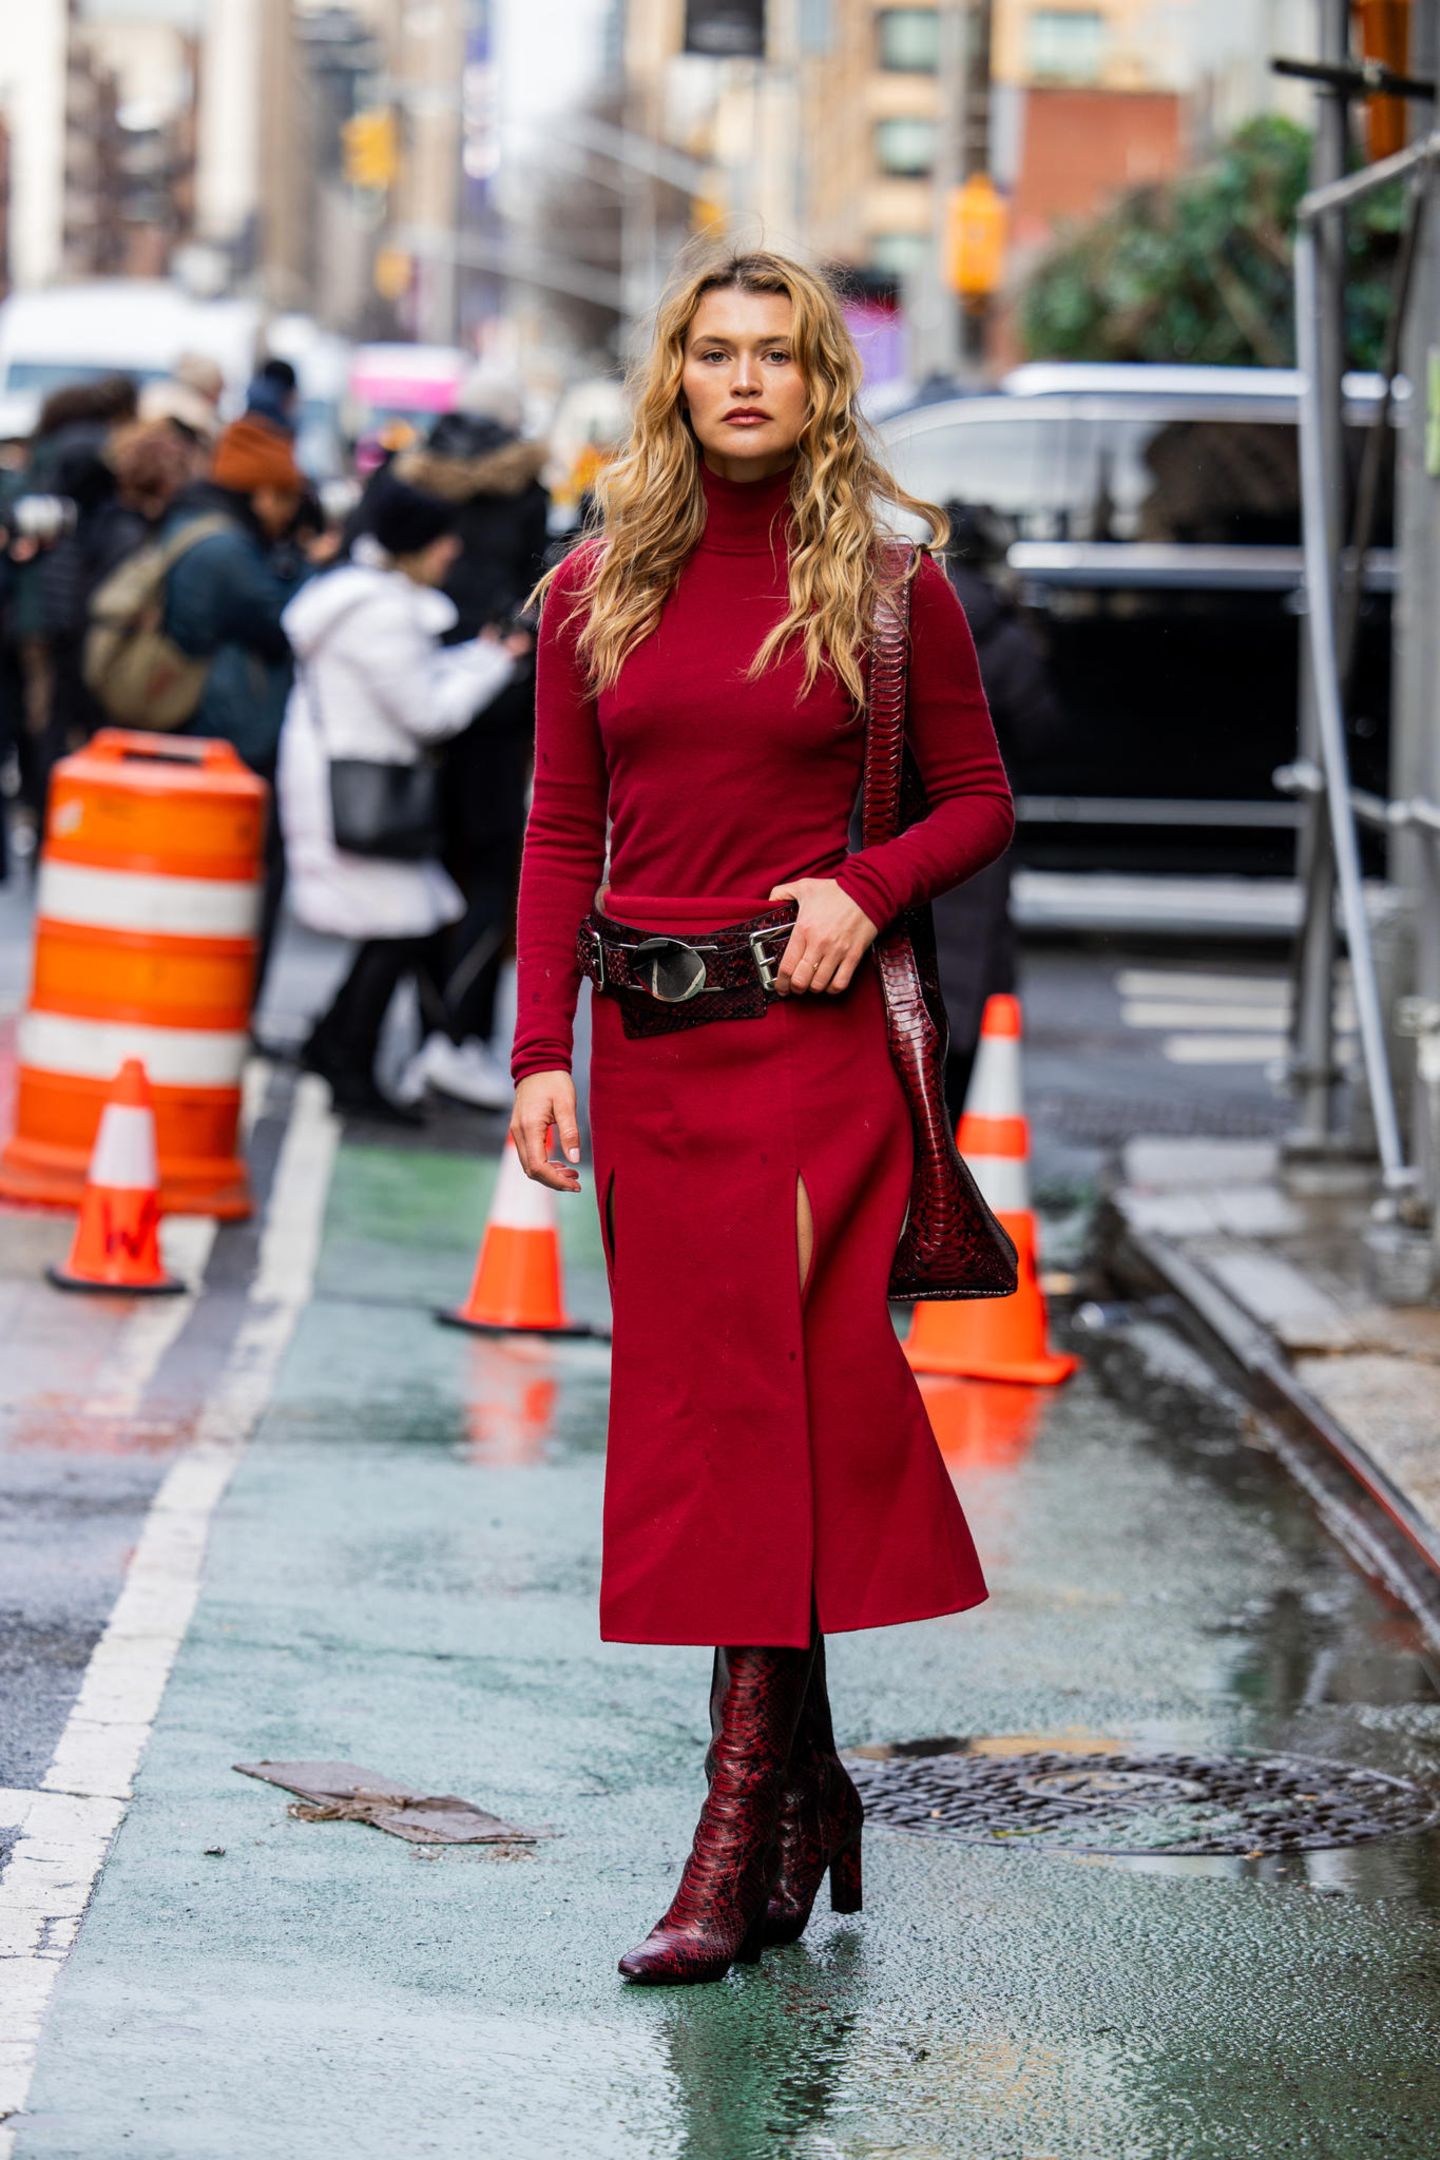 Chloe Lecareaux besucht ebenfalls die Michael-Kors-Fashion-Show und begeistert in einem All-Red-Look. Sie kombiniert ein rotes Oberteil mit einem Rollkragen zu einem Midirock und rundet das Outfit mit einem burgunderfarbenen, plakativen Gürtel, einer Tasche und perfekt abgestimmten Stiefeln in Krokodil-Optik ab.